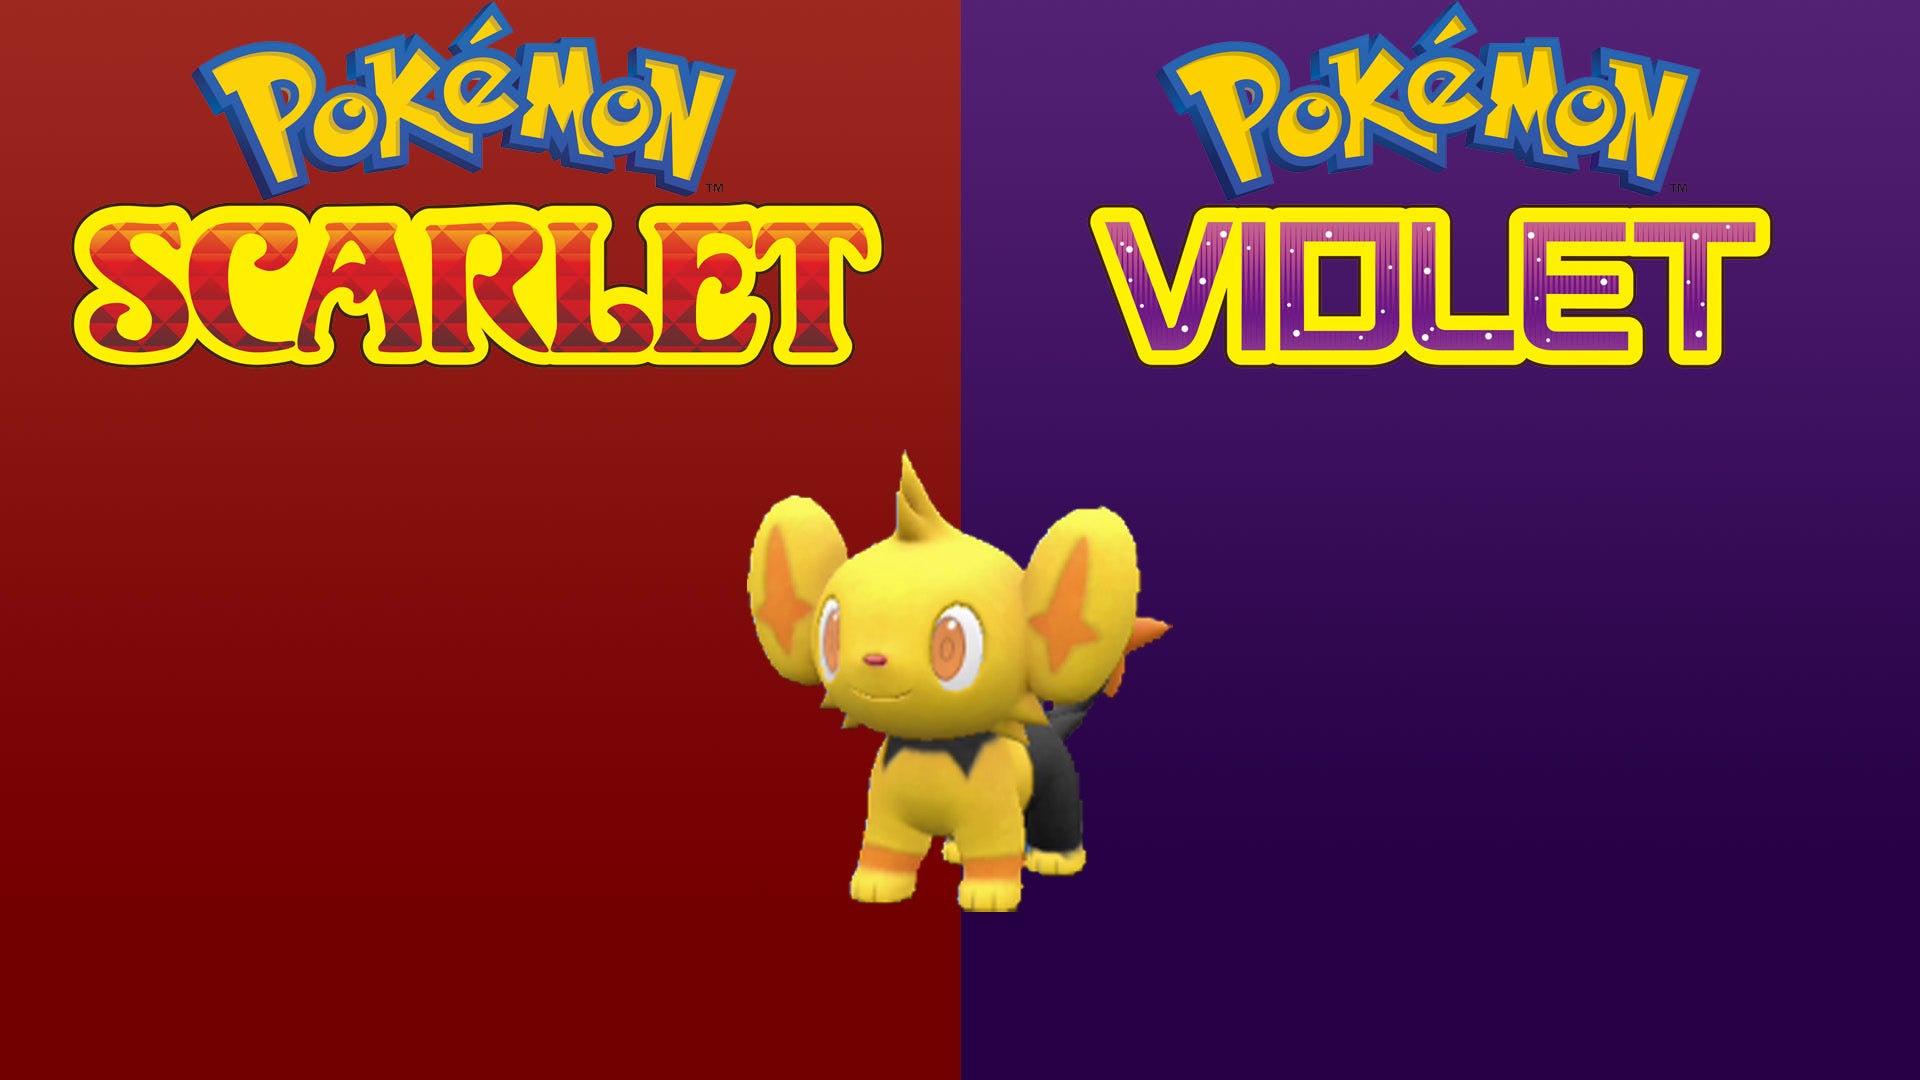 Shiny Shinx Pokemon Scarlet and Violet